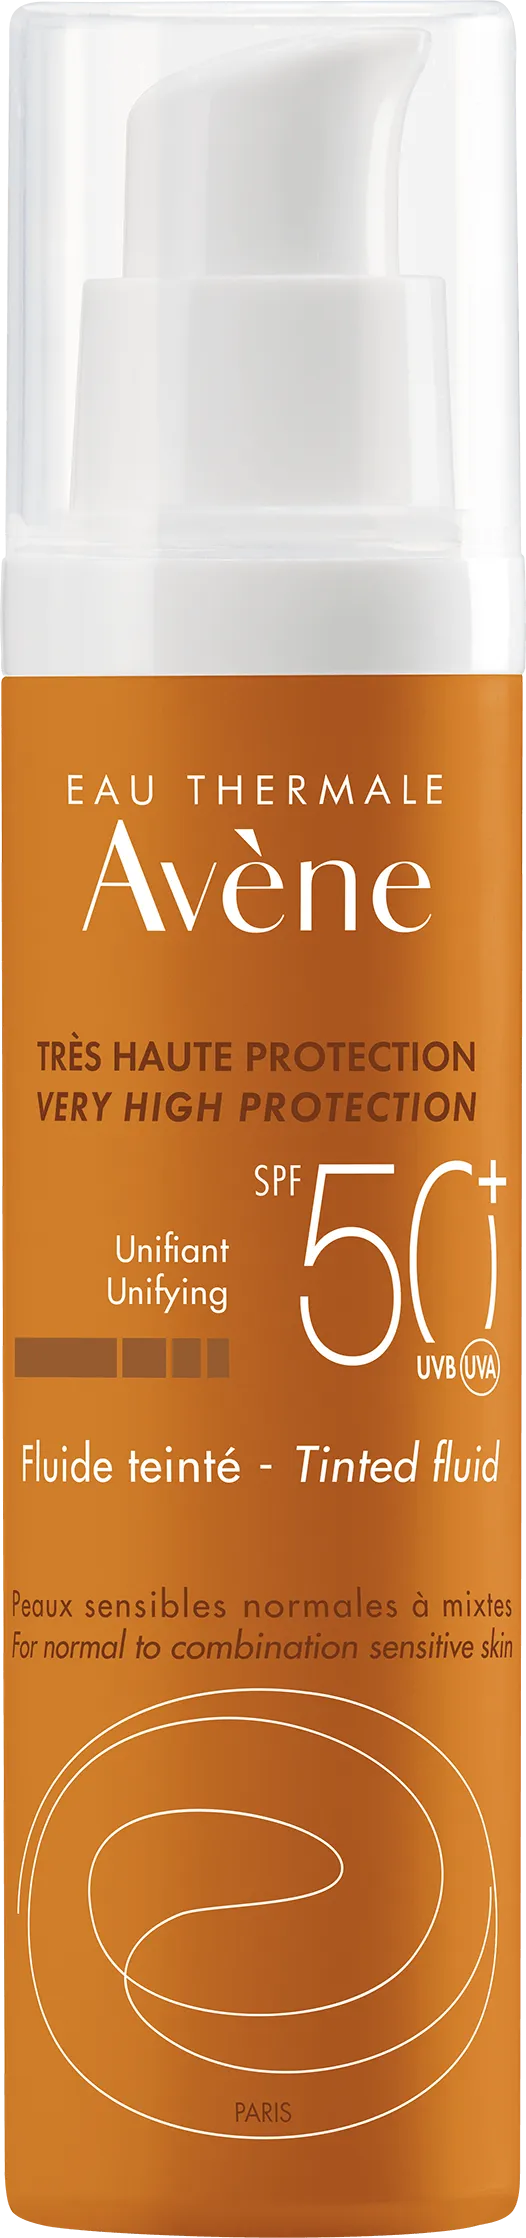 Avene Sun, fluid koloryzujący, bardzo wysoka ochrona przeciwsłoneczna,  SPF 50+,  50 ml